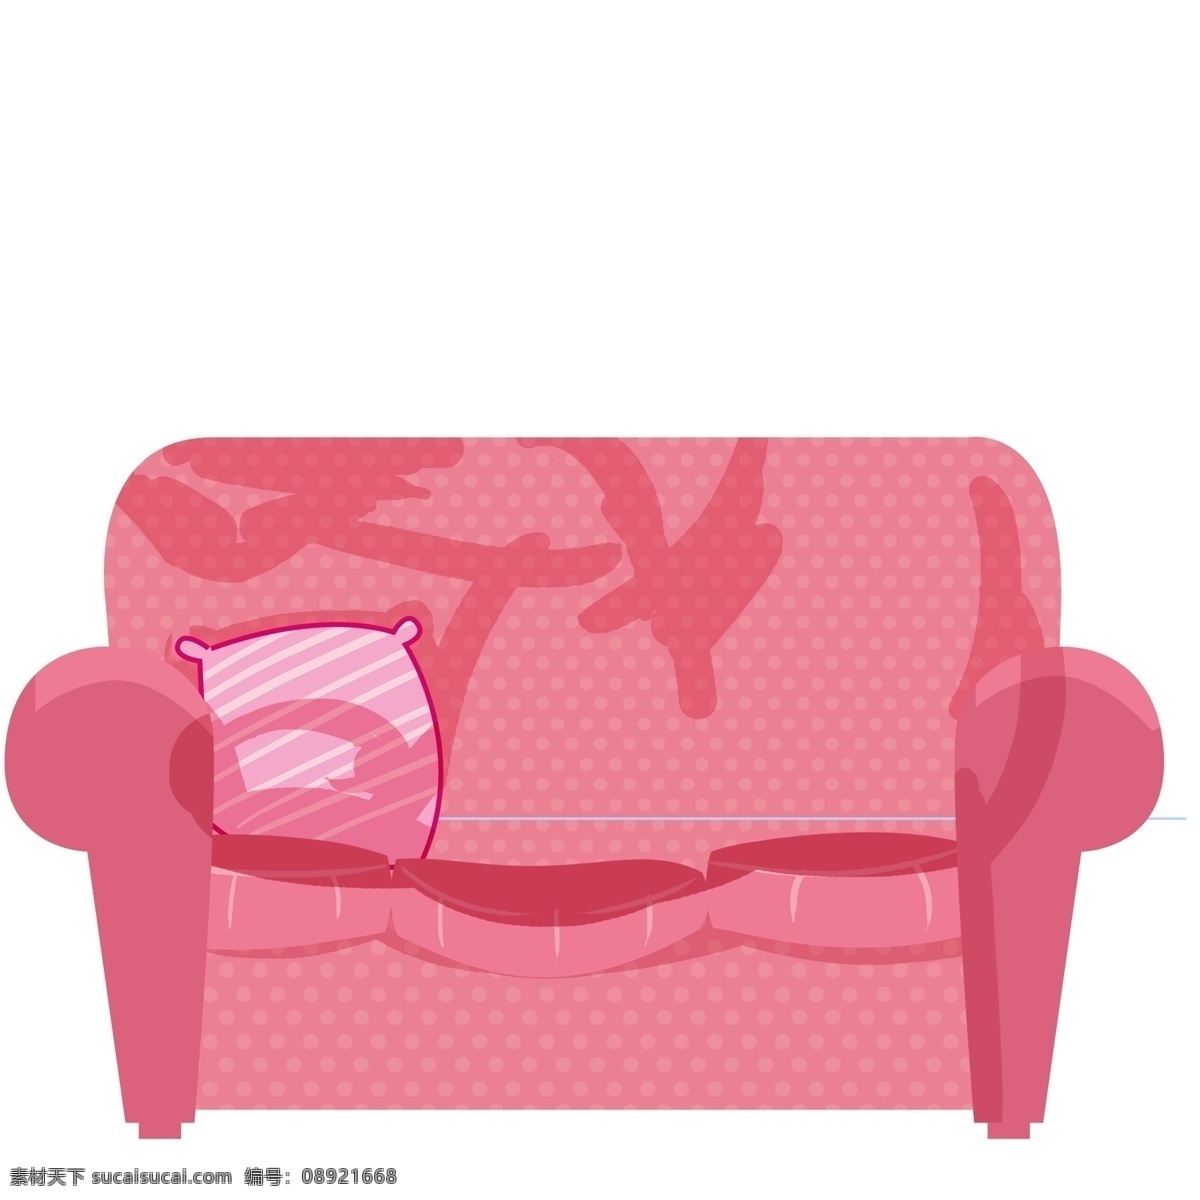 粉色 沙发 免 抠 图 免抠图 卡通沙发 粉色沙发 卡通 扣 沙发免抠图